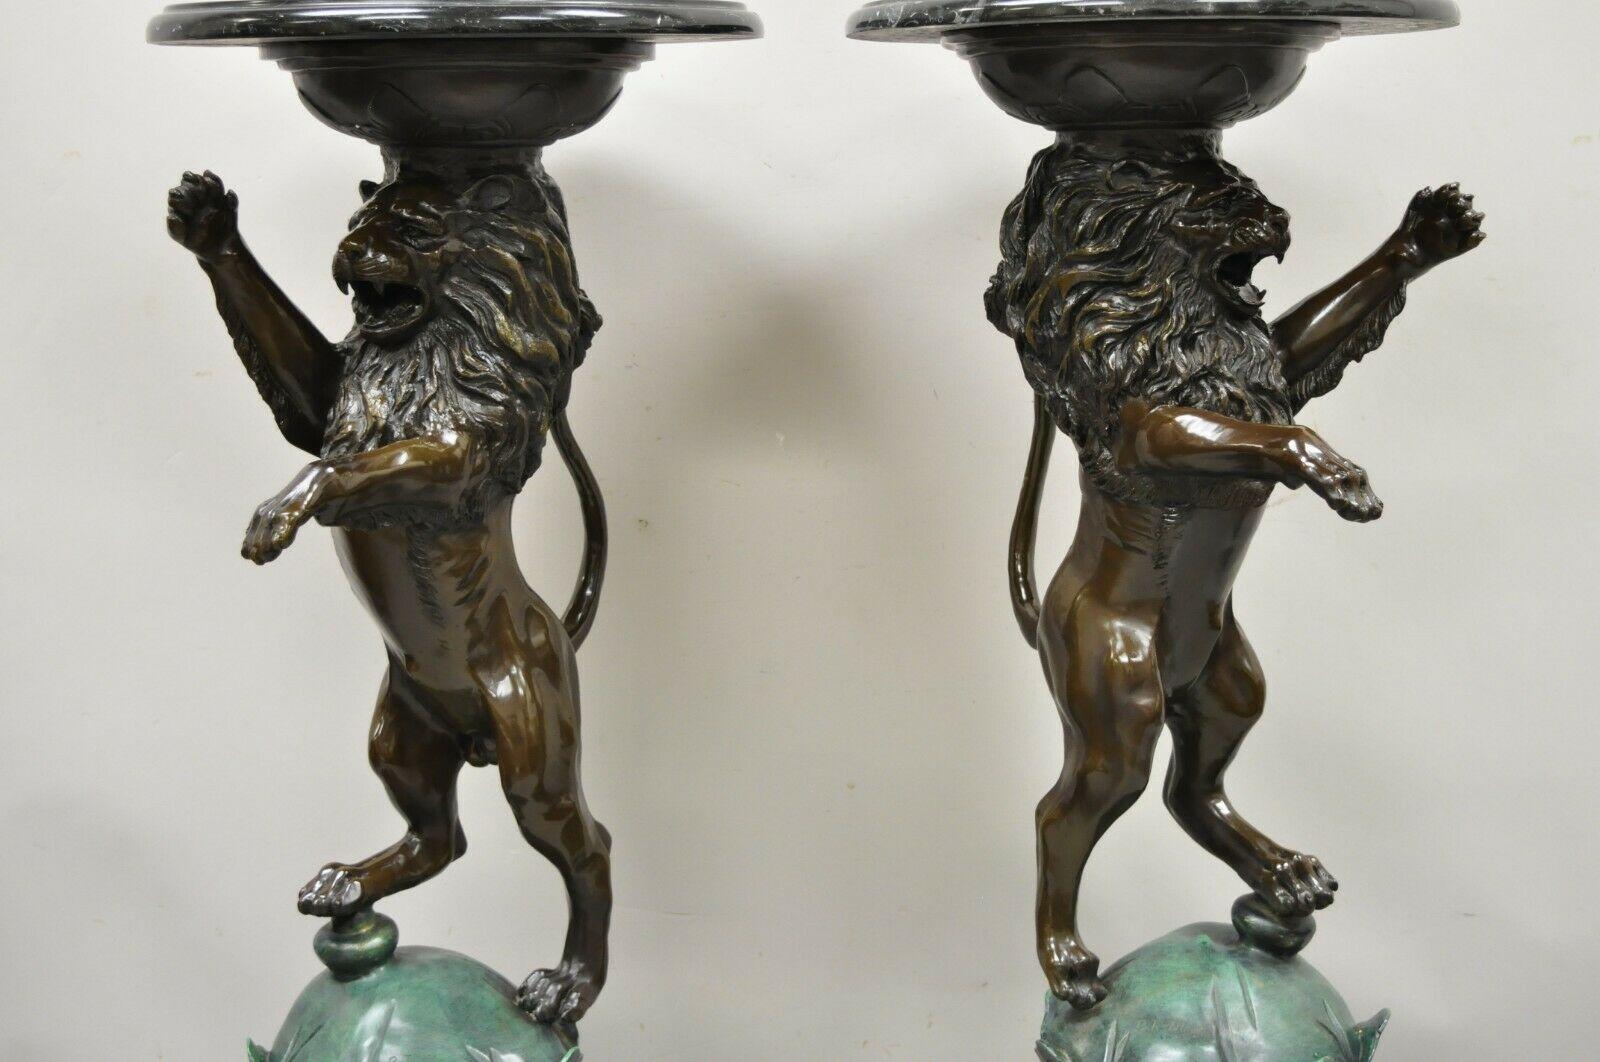 Bronzeskulptur Löwe mit Marmorsockel nach P.J Mene - ein Paar. Rechte und linke Form, schwere Löwenfiguren aus Bronzeguss, runde schwarze Marmorplatten, signiert 